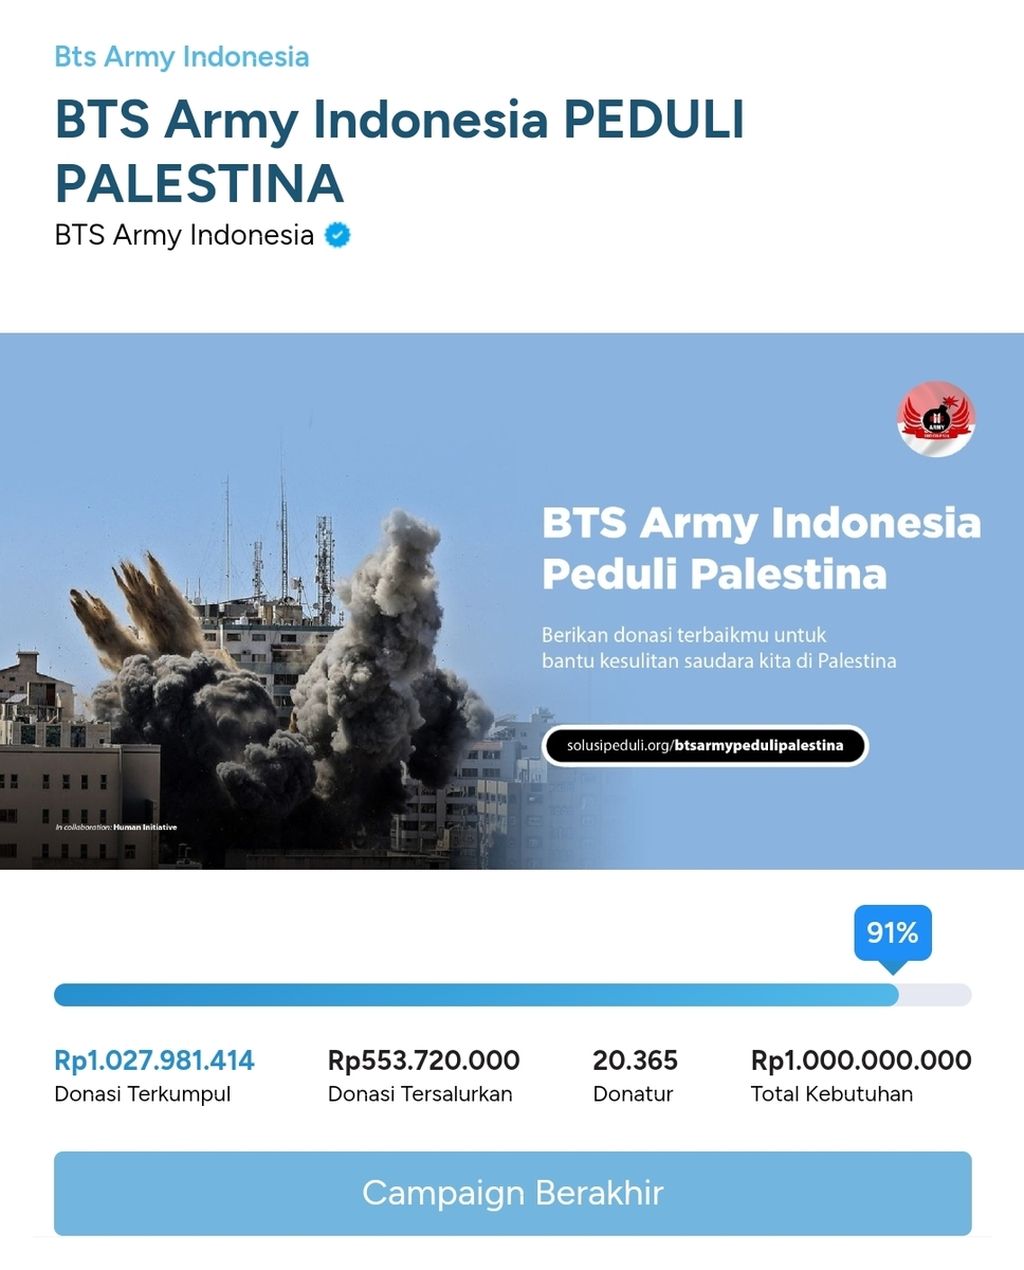 Donasi yang dikumpulkan komunitas penggemar BTS Indonesia untuk korban perang di Gaza.